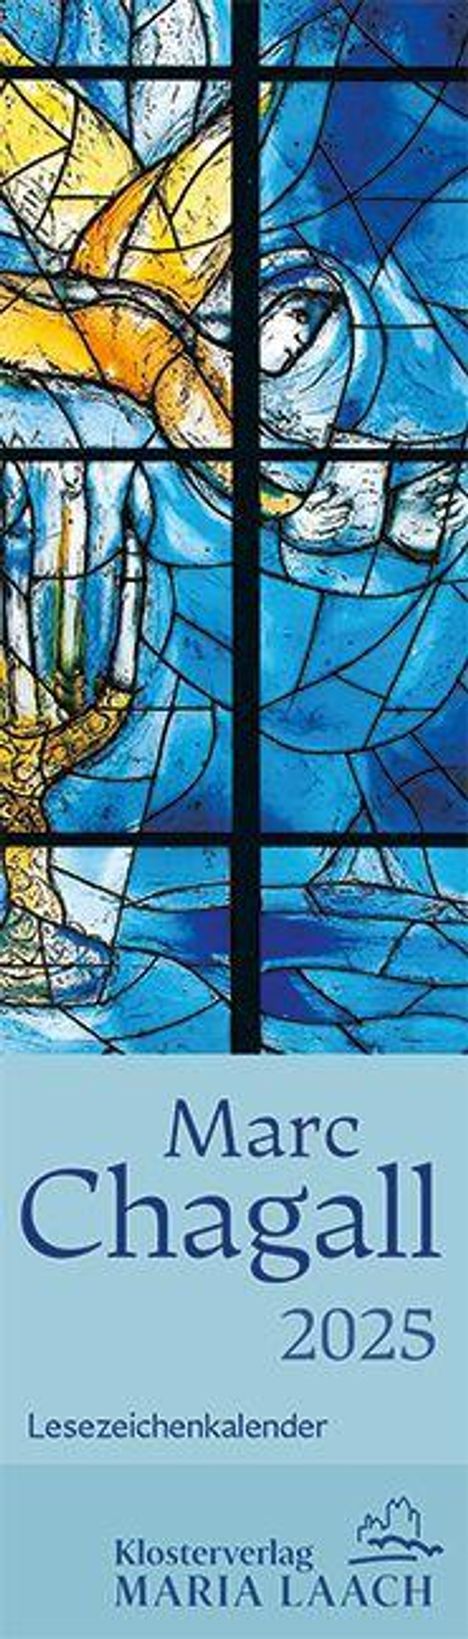 Lesezeichenkalender - Marc Chagall 2025, Kalender